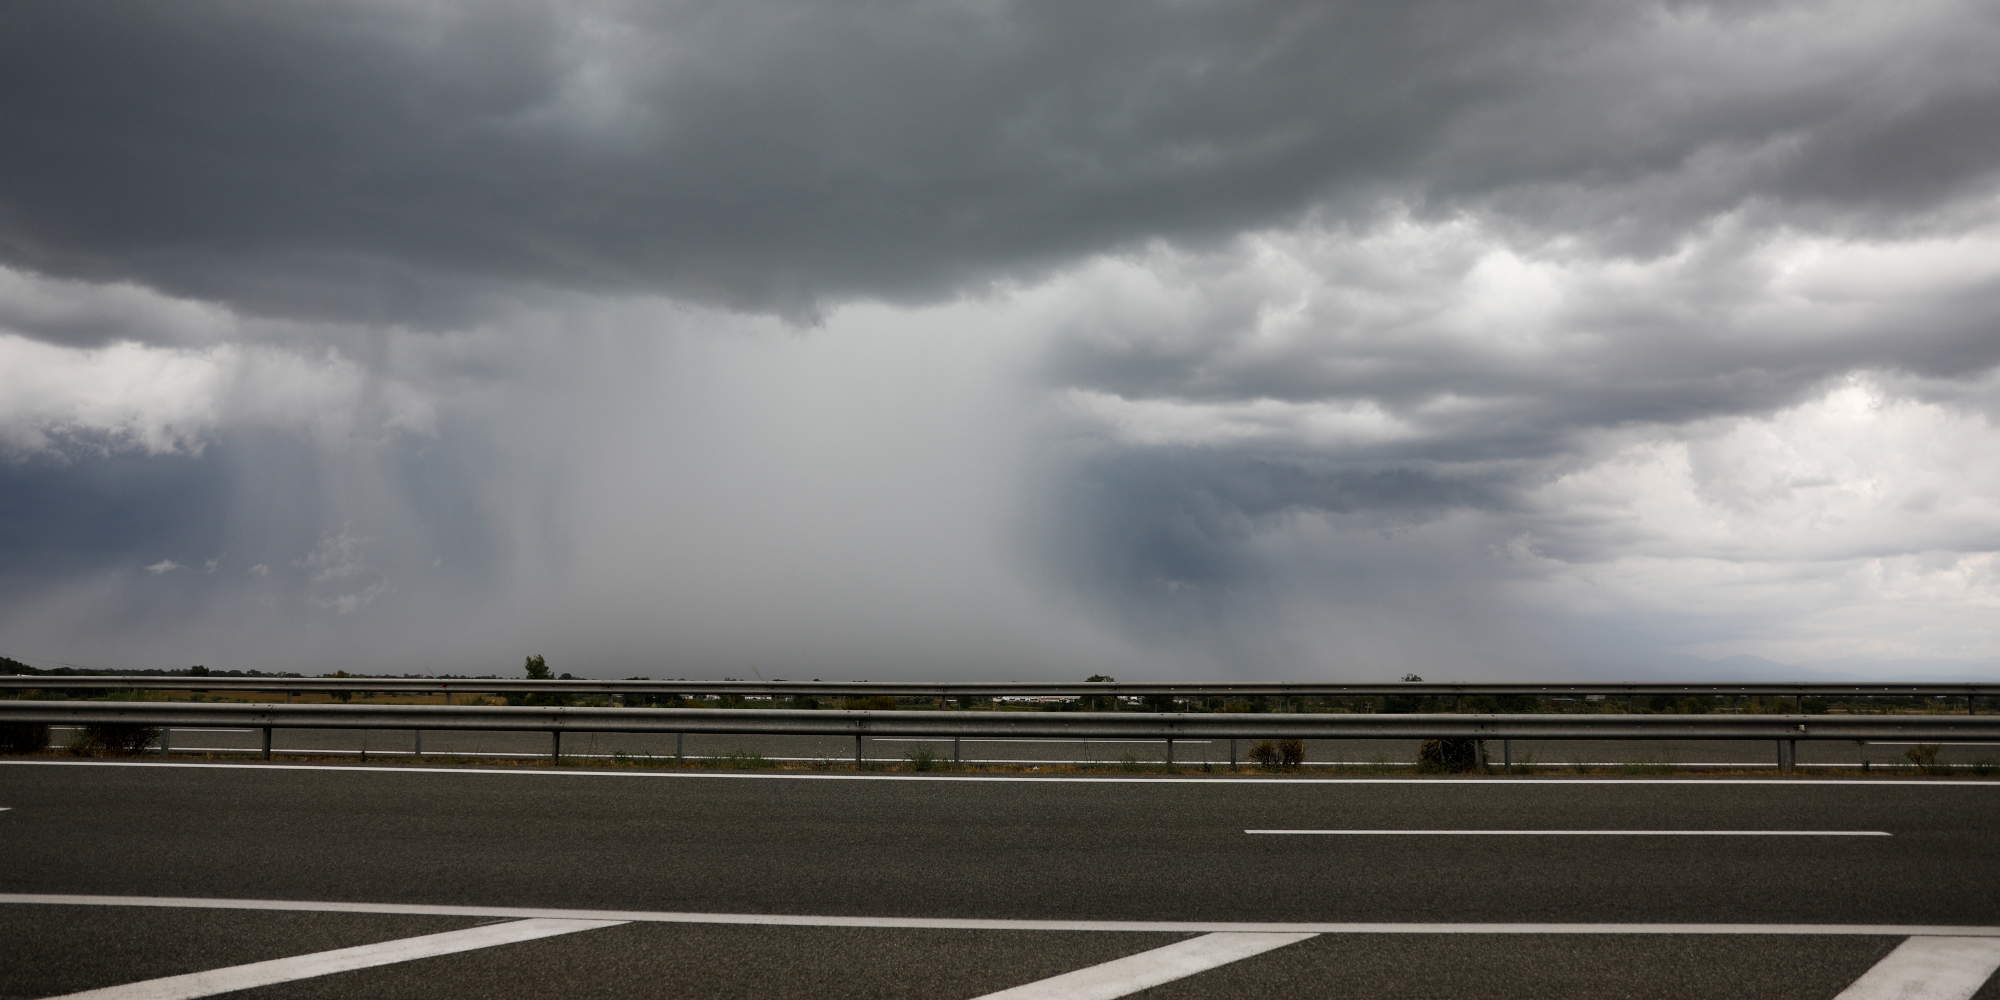 Κακοκαιρία στο Αγρίνιο, τα σύννεφα μοιάζουν απειλητικά στην άκρη του οδοστρώματος